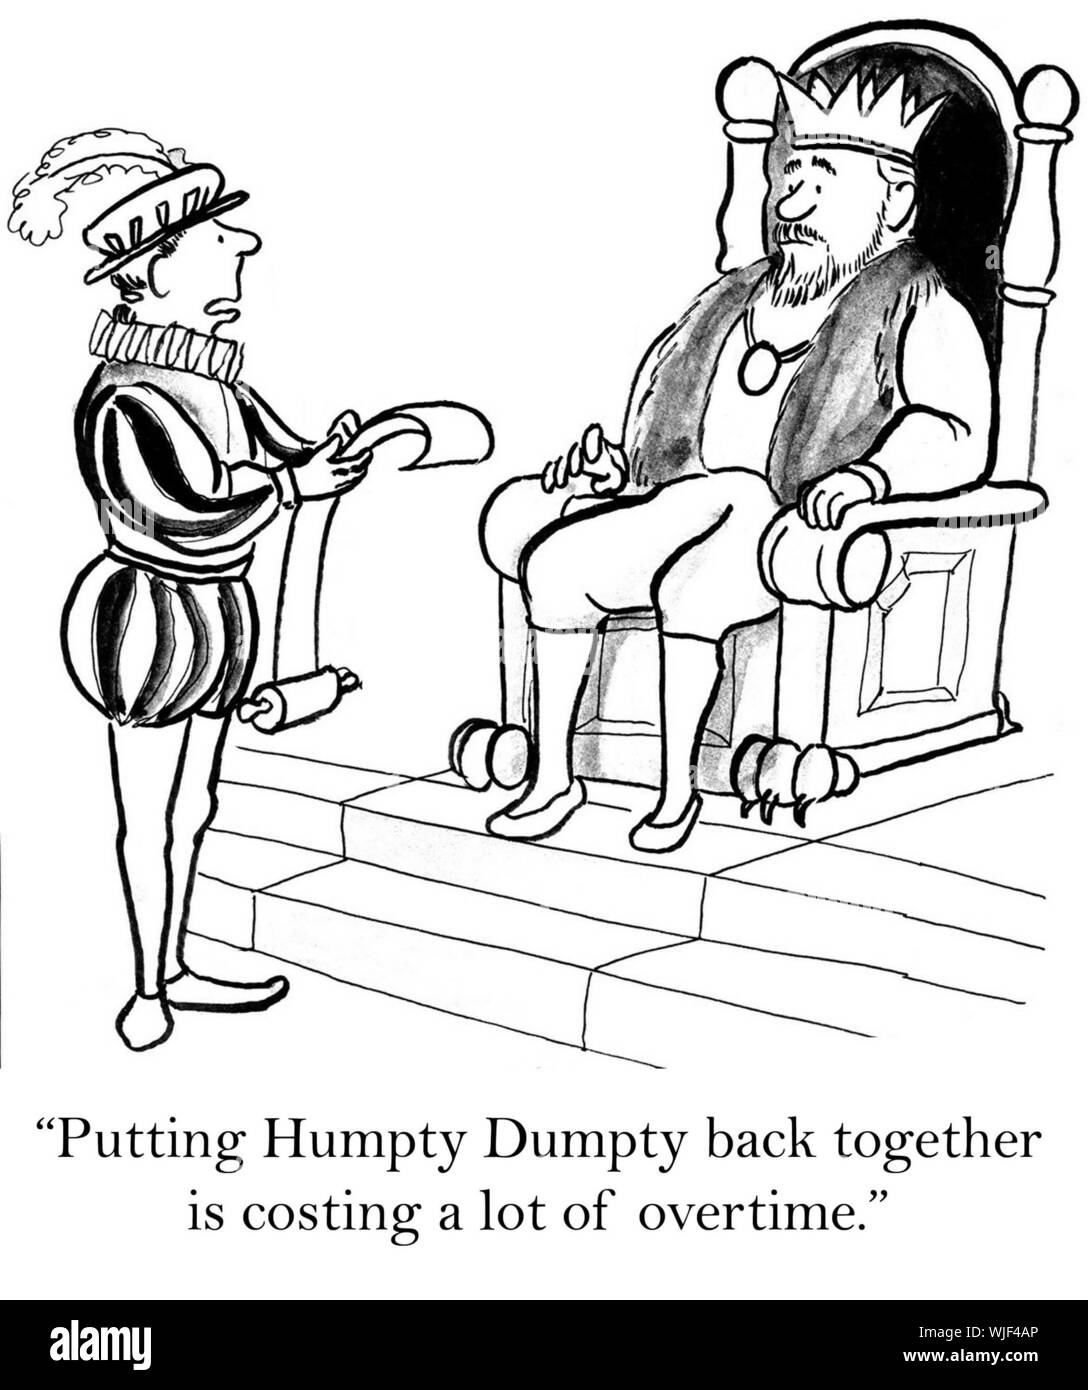 'Putting Humpty Dumpty est de retour ensemble, coûte beaucoup d'heures supplémentaires." Banque D'Images